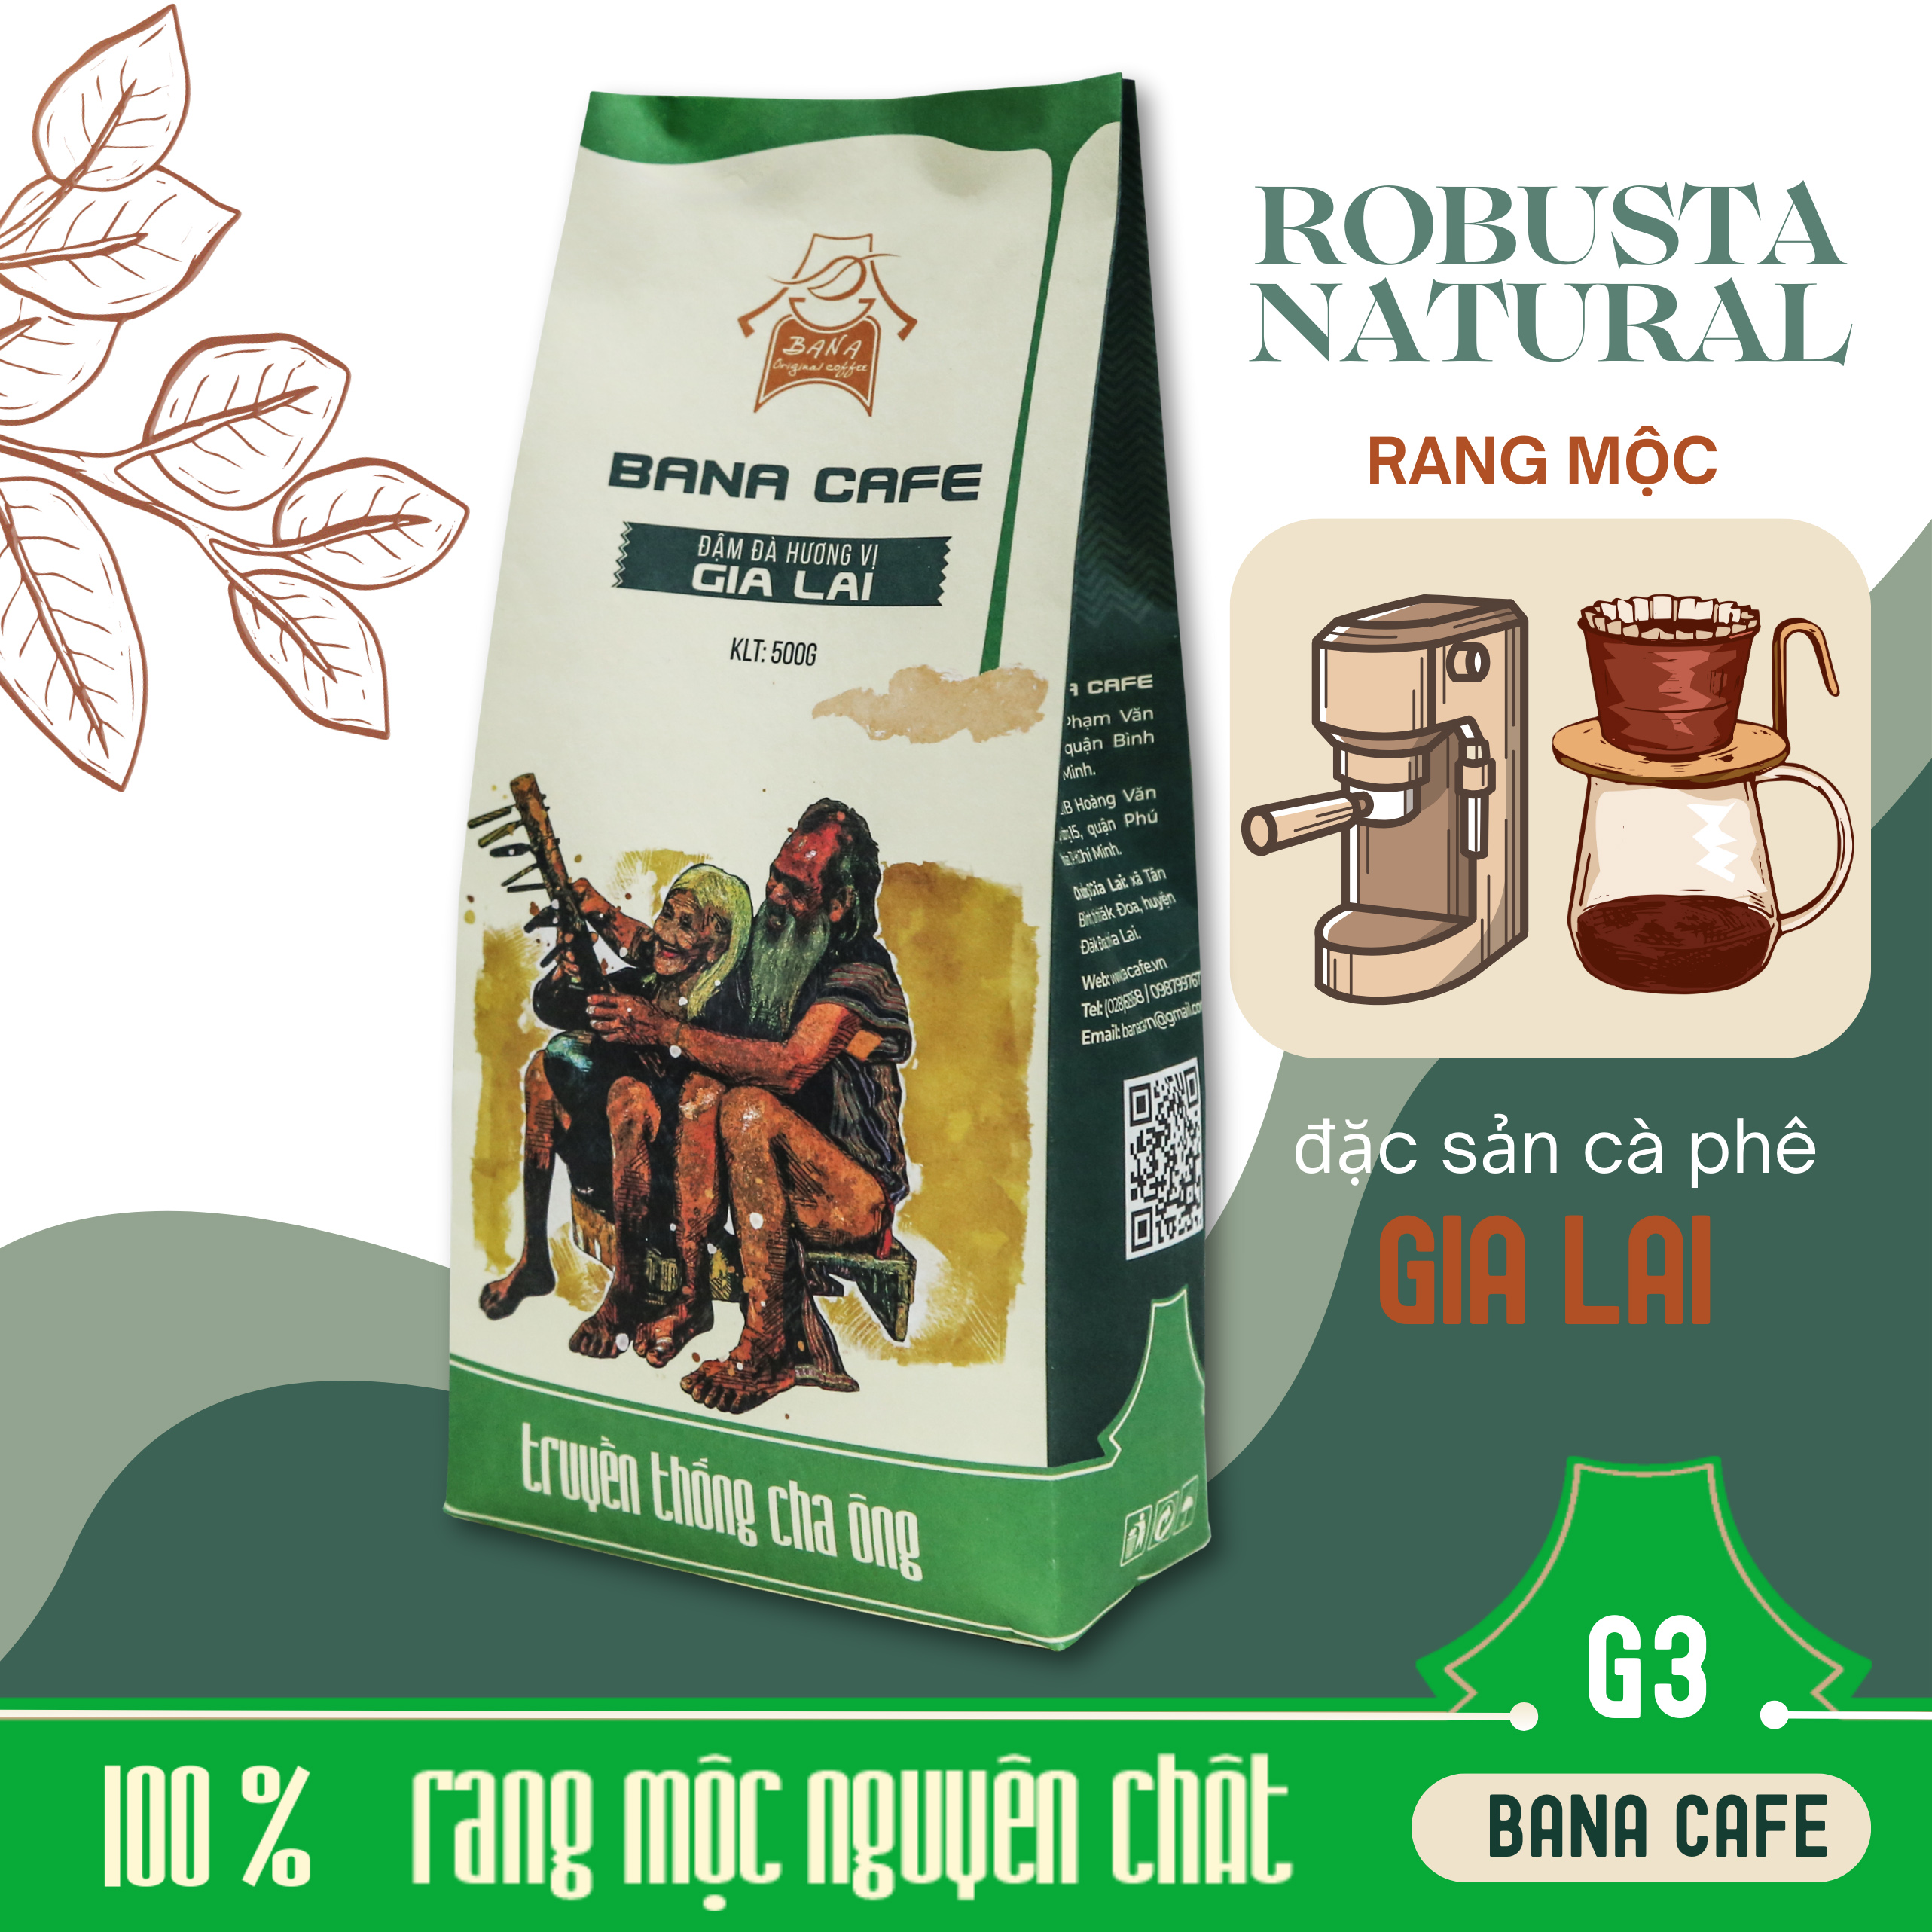 Cà phê rang mộc nguyên chất Bana| Cà phê rang mộc nguyên chất Bana cafe G3 100% Robusta Natural (pha phin+máy)